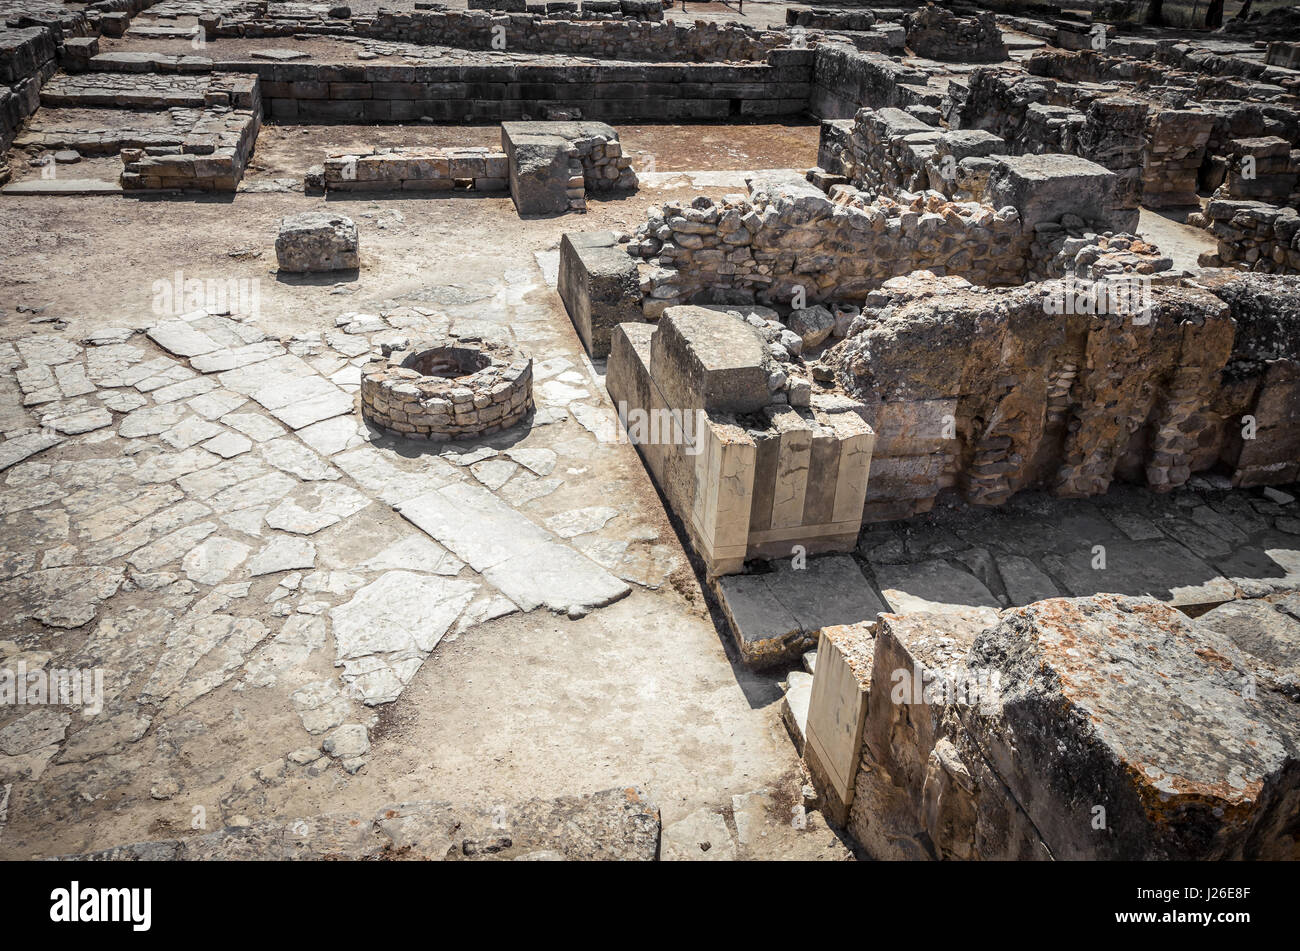 Le site de Phaistos, île de Crète, Grèce grec. ruines du palais minoen de festos dans l'île de Crète Banque D'Images